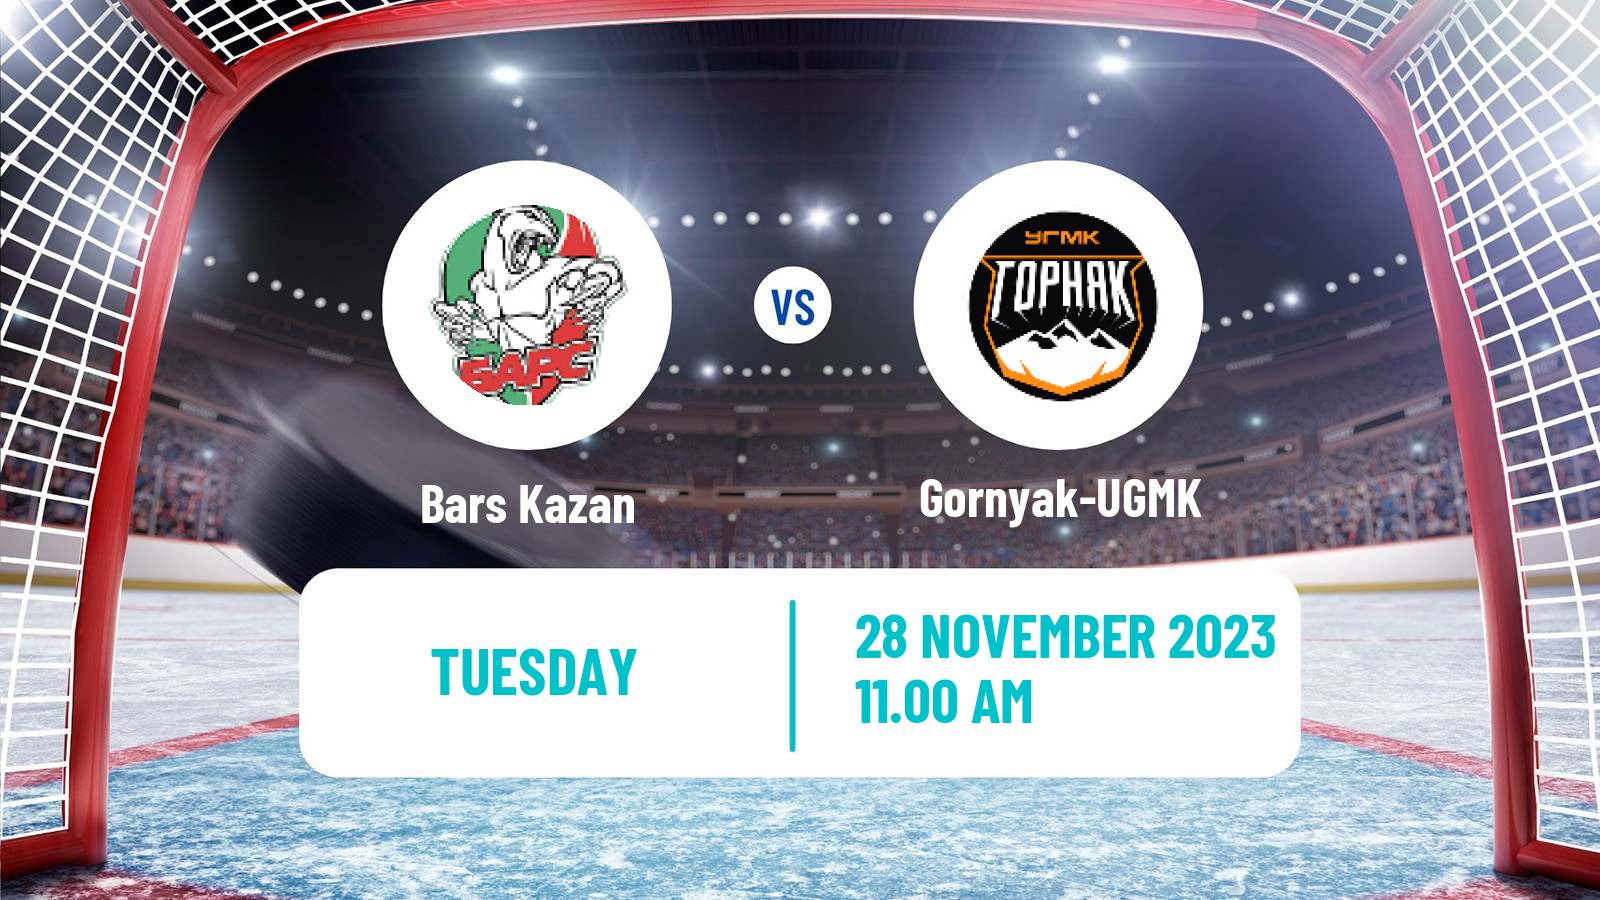 Hockey VHL Bars Kazan - Gornyak-UGMK